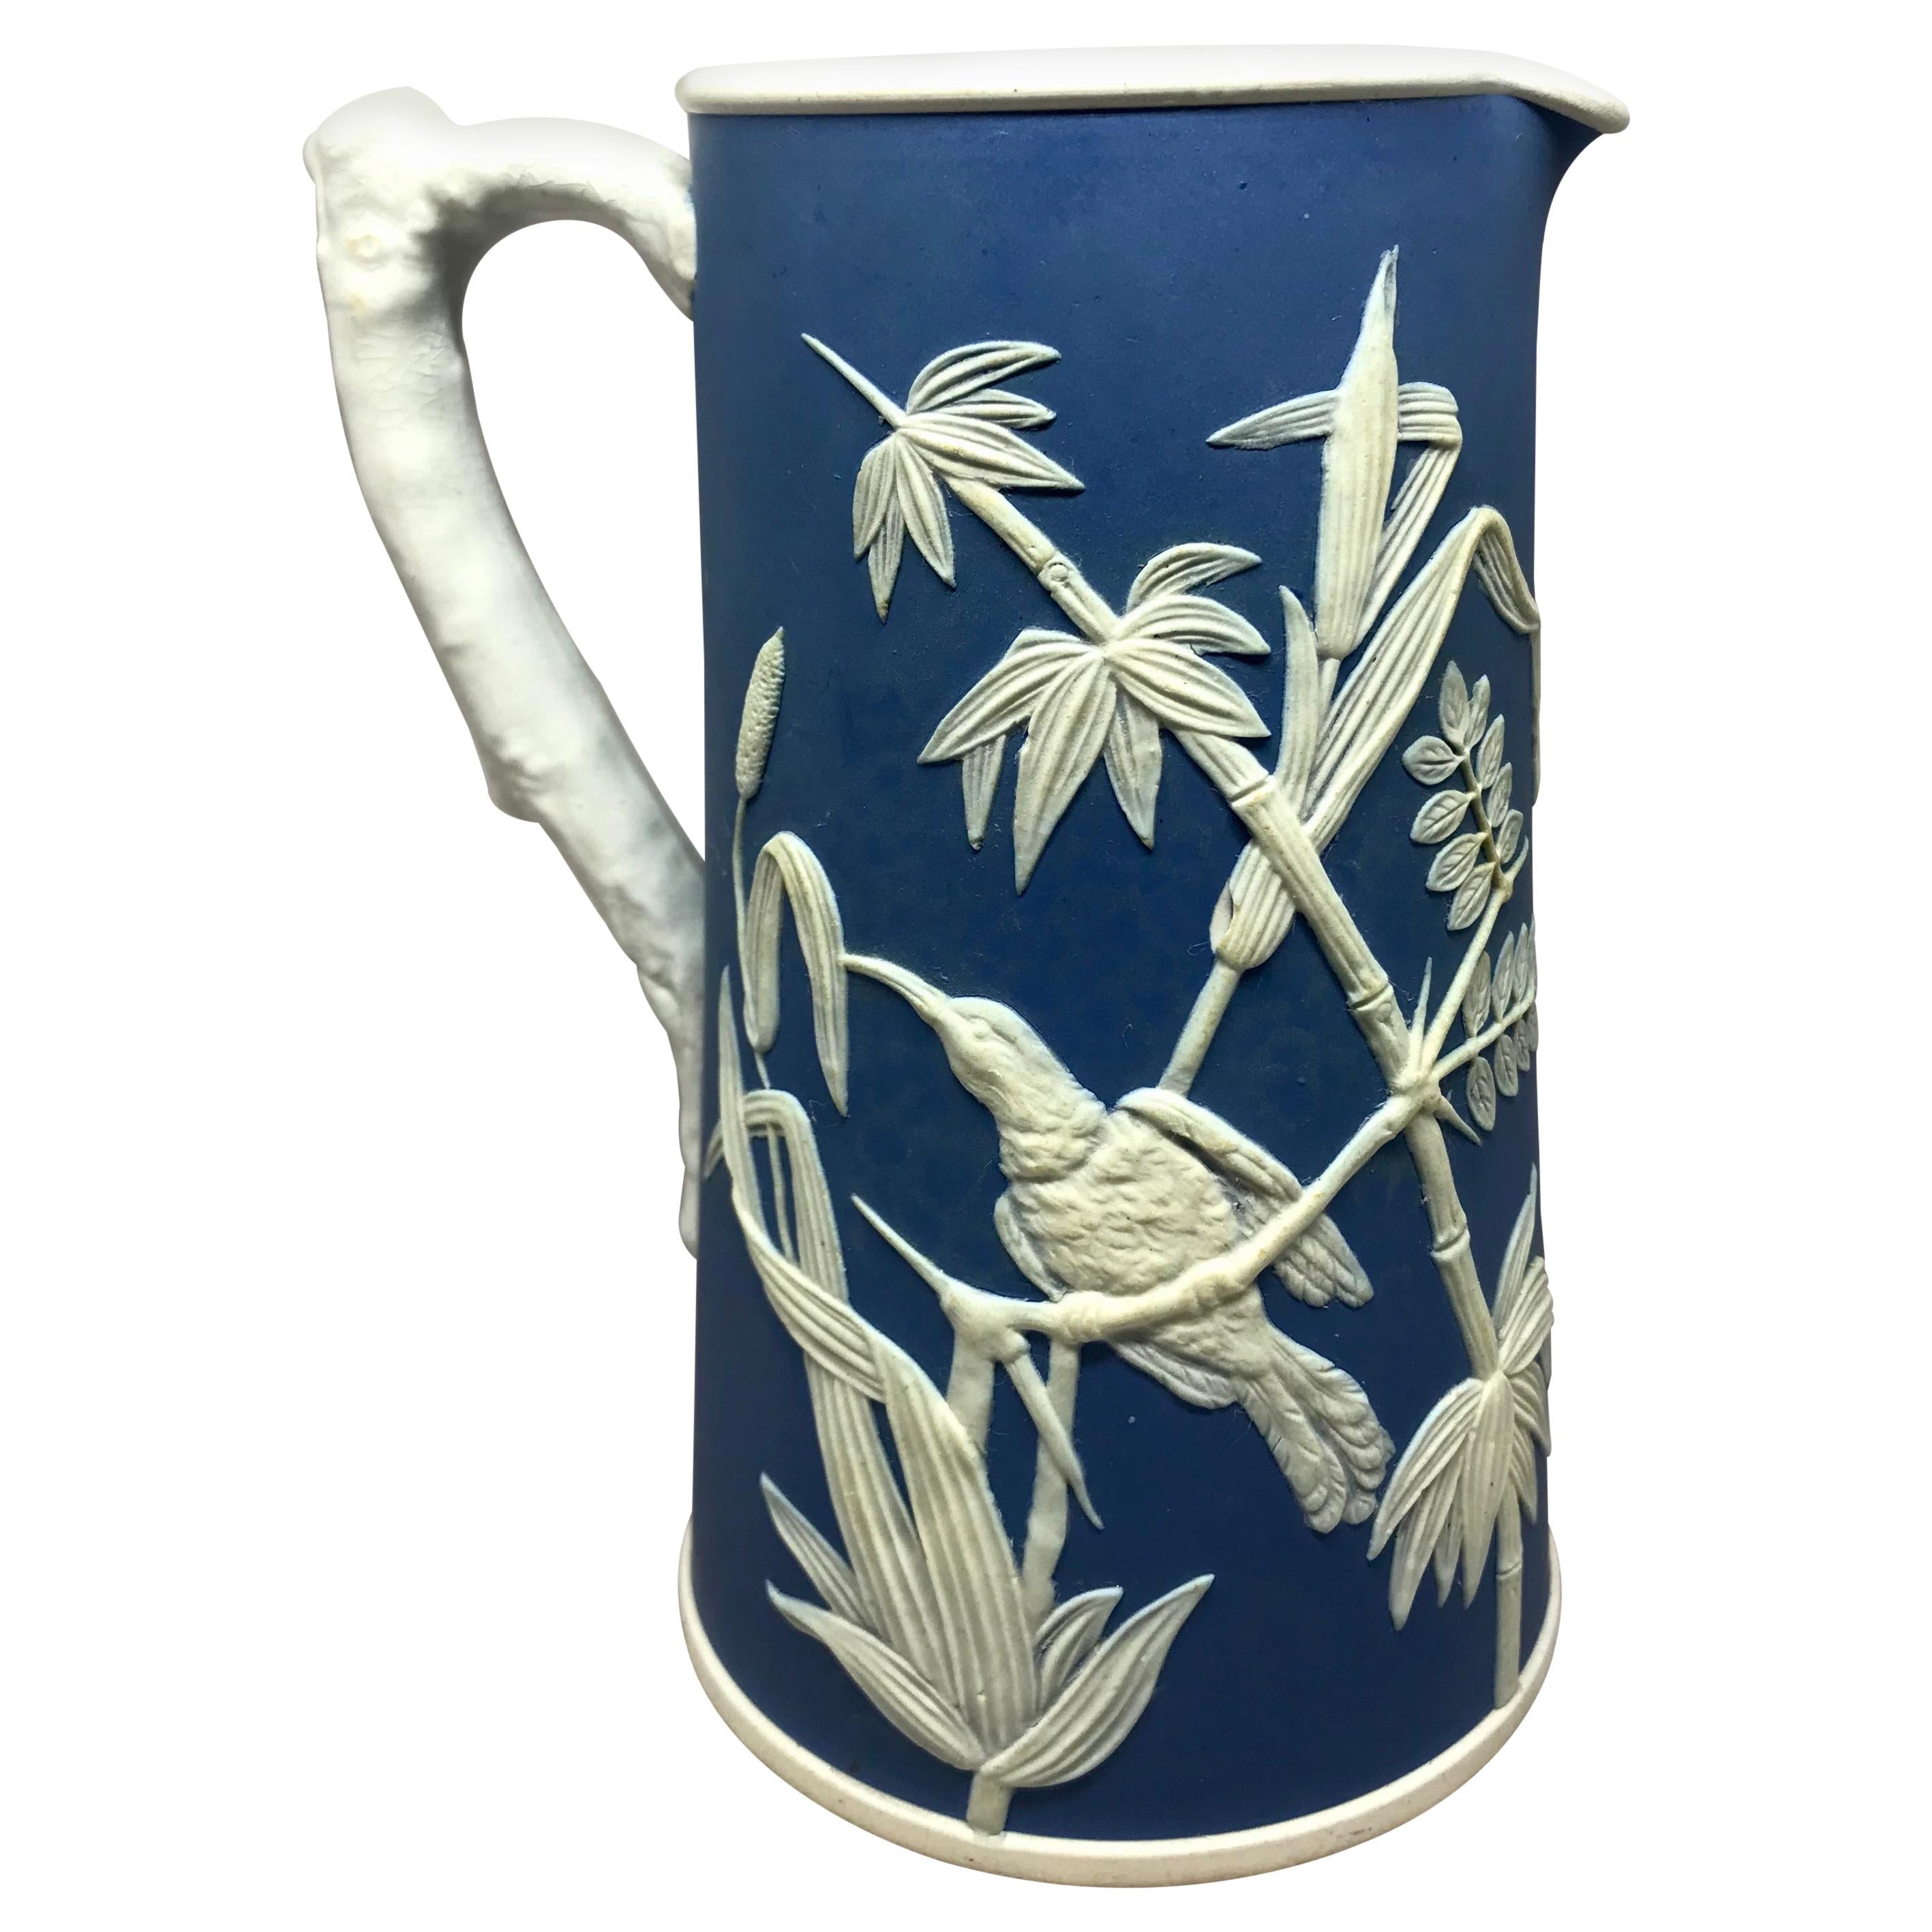 Pichet colibri en jaspe de Paros. Vibrant pichet bleu et blanc vintage Parian avec des colibris au milieu de feuillages. Angleterre, vers les années 1930
Dimensions : 4,63